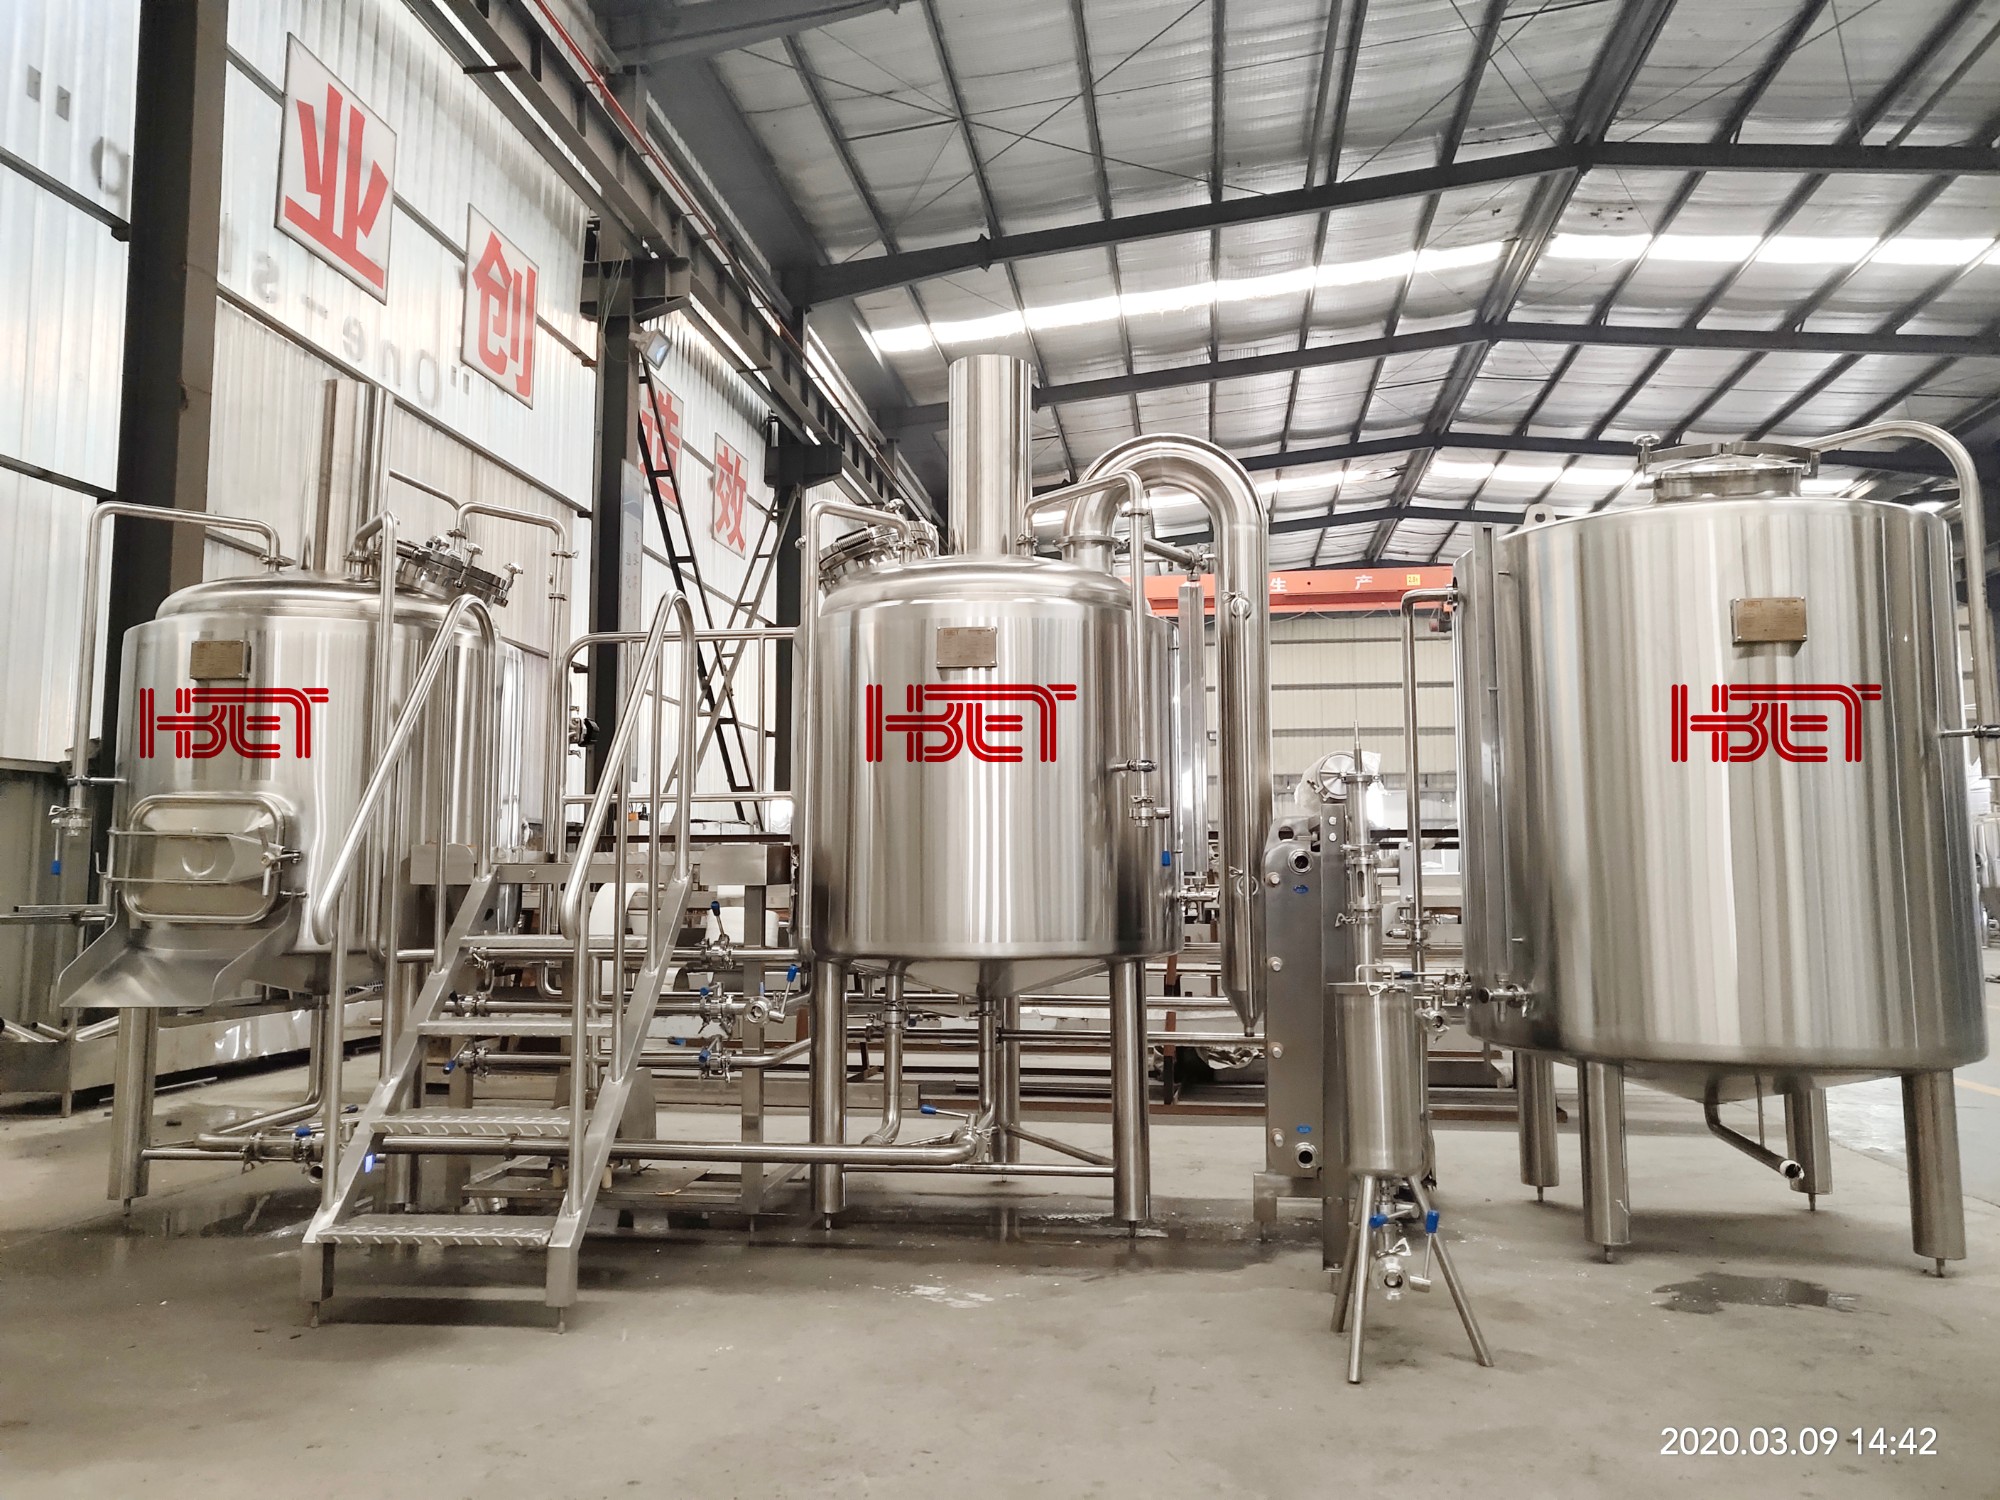 500L volledige brouwerij apparatuur wordt verwacht in mei aan te komen in Constanta haven